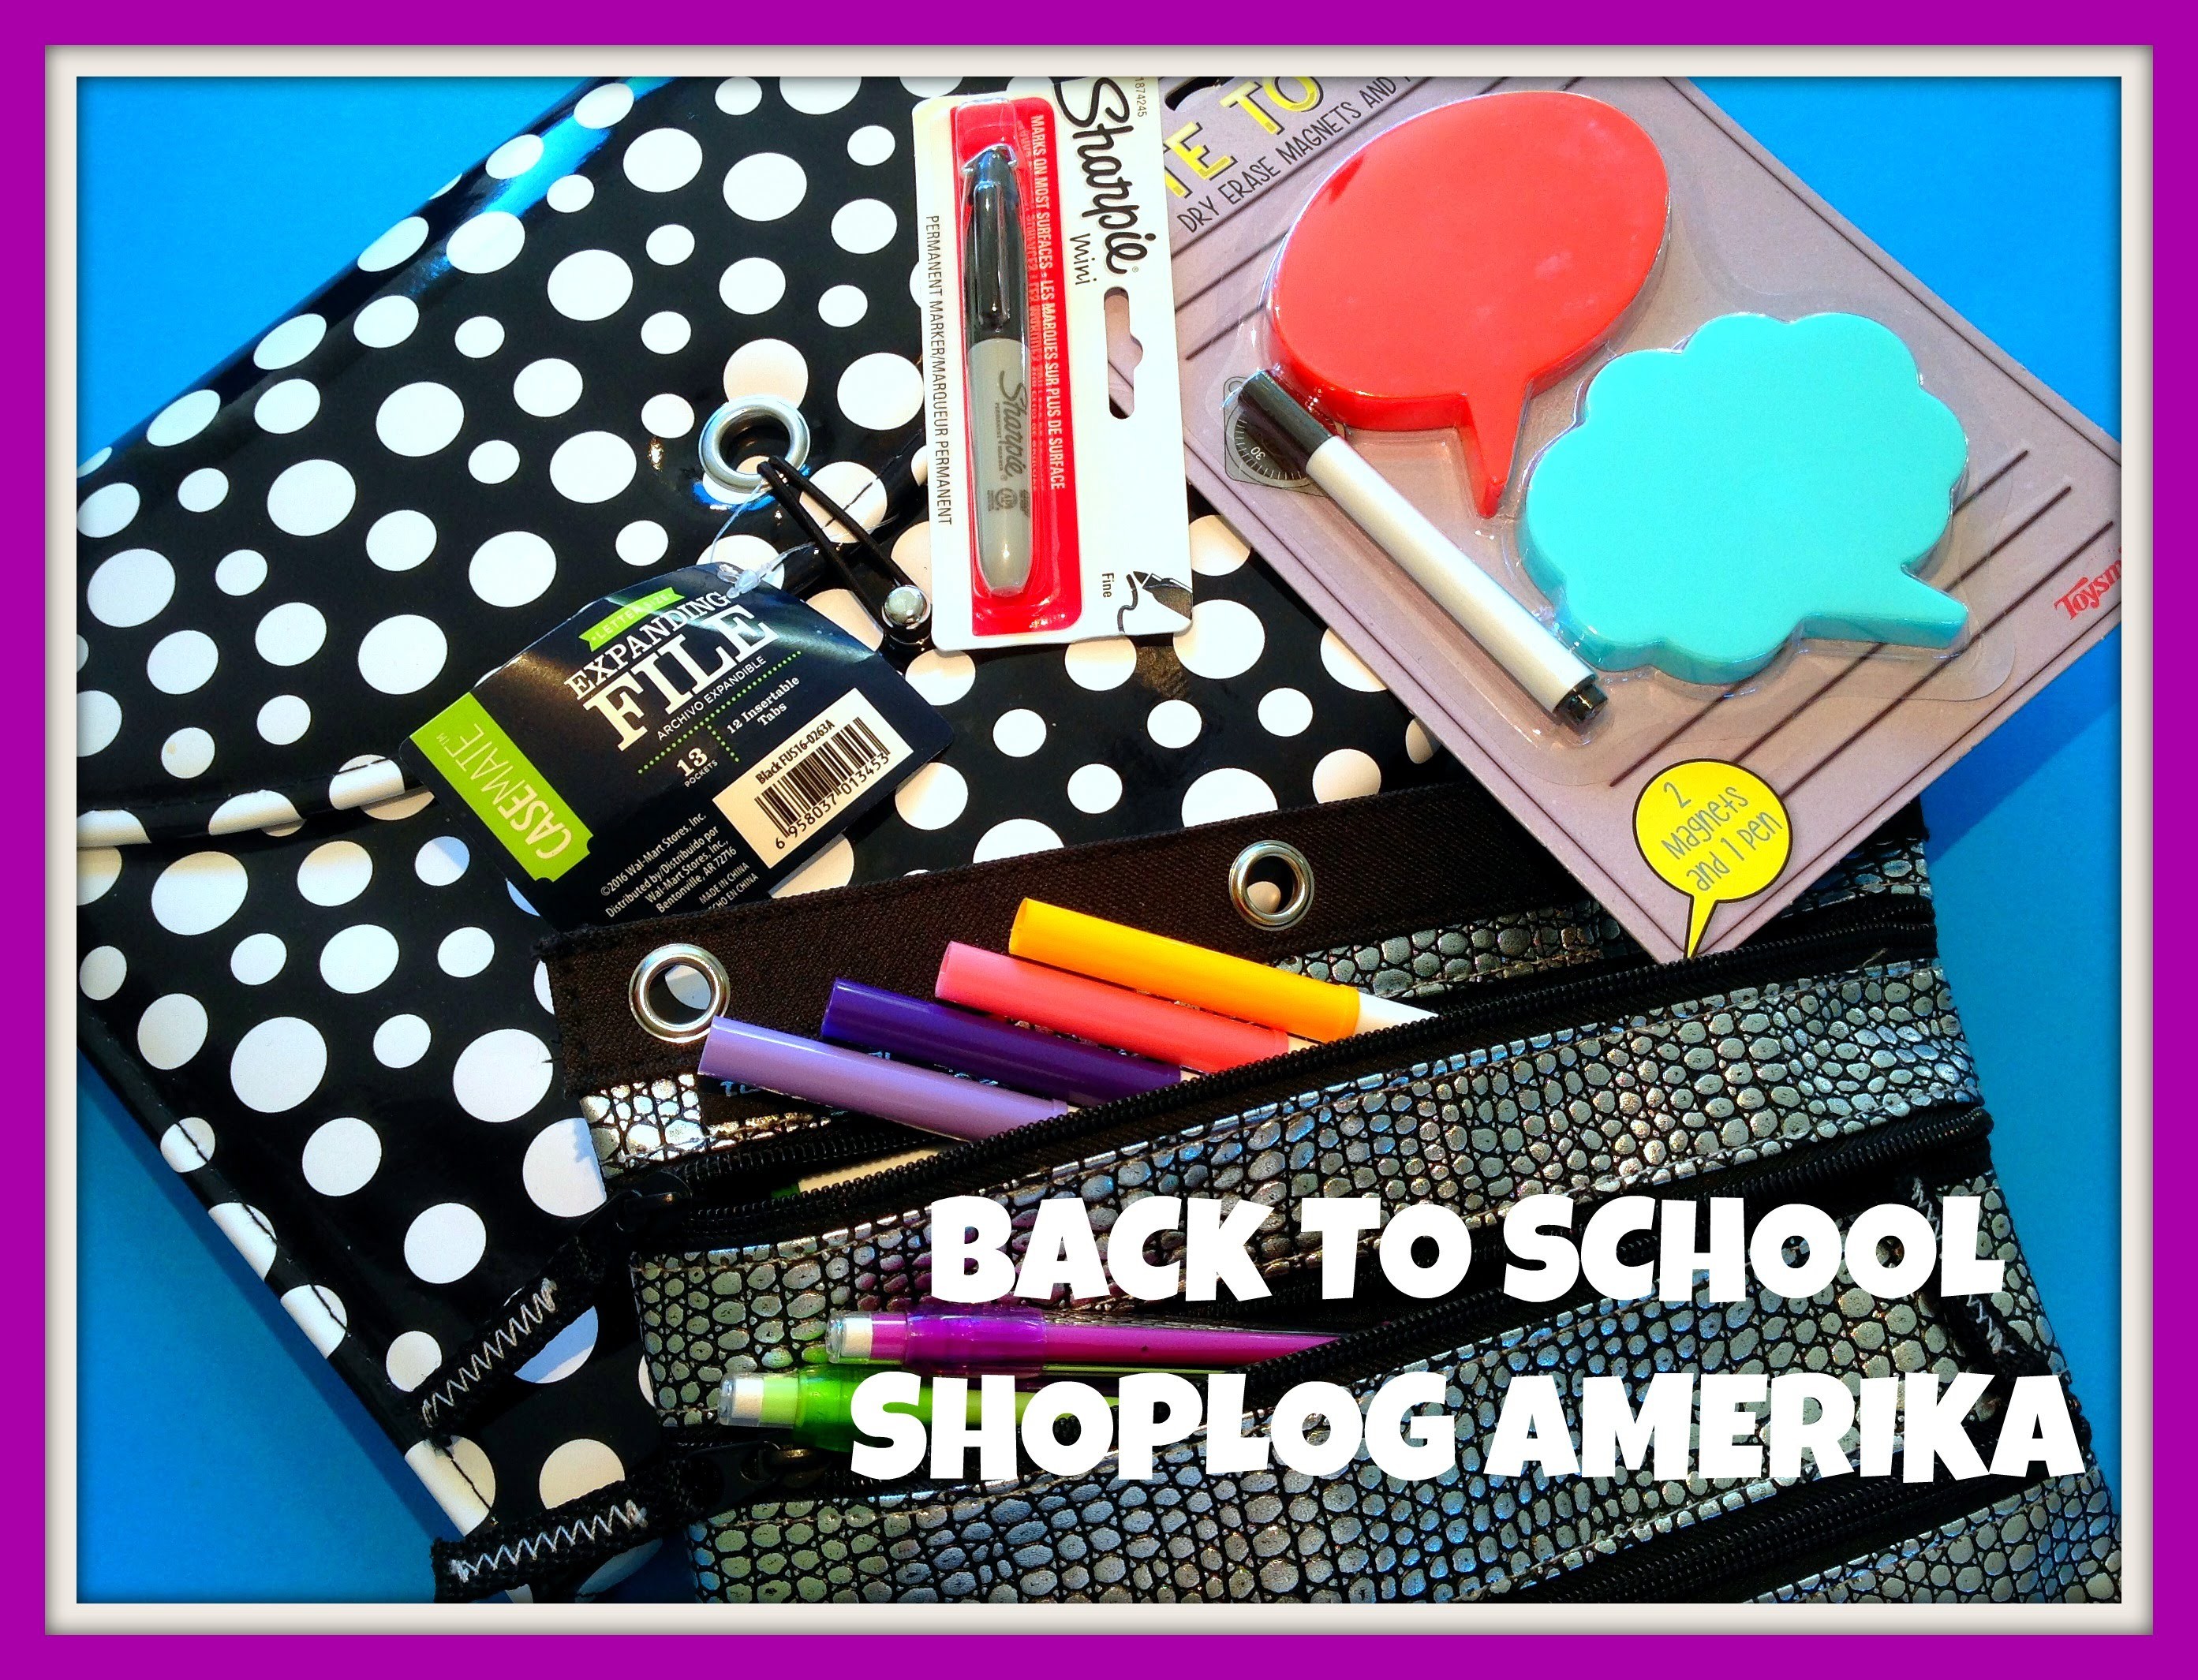 Back to School Shoplog tijdens onze vakantie in Amerika